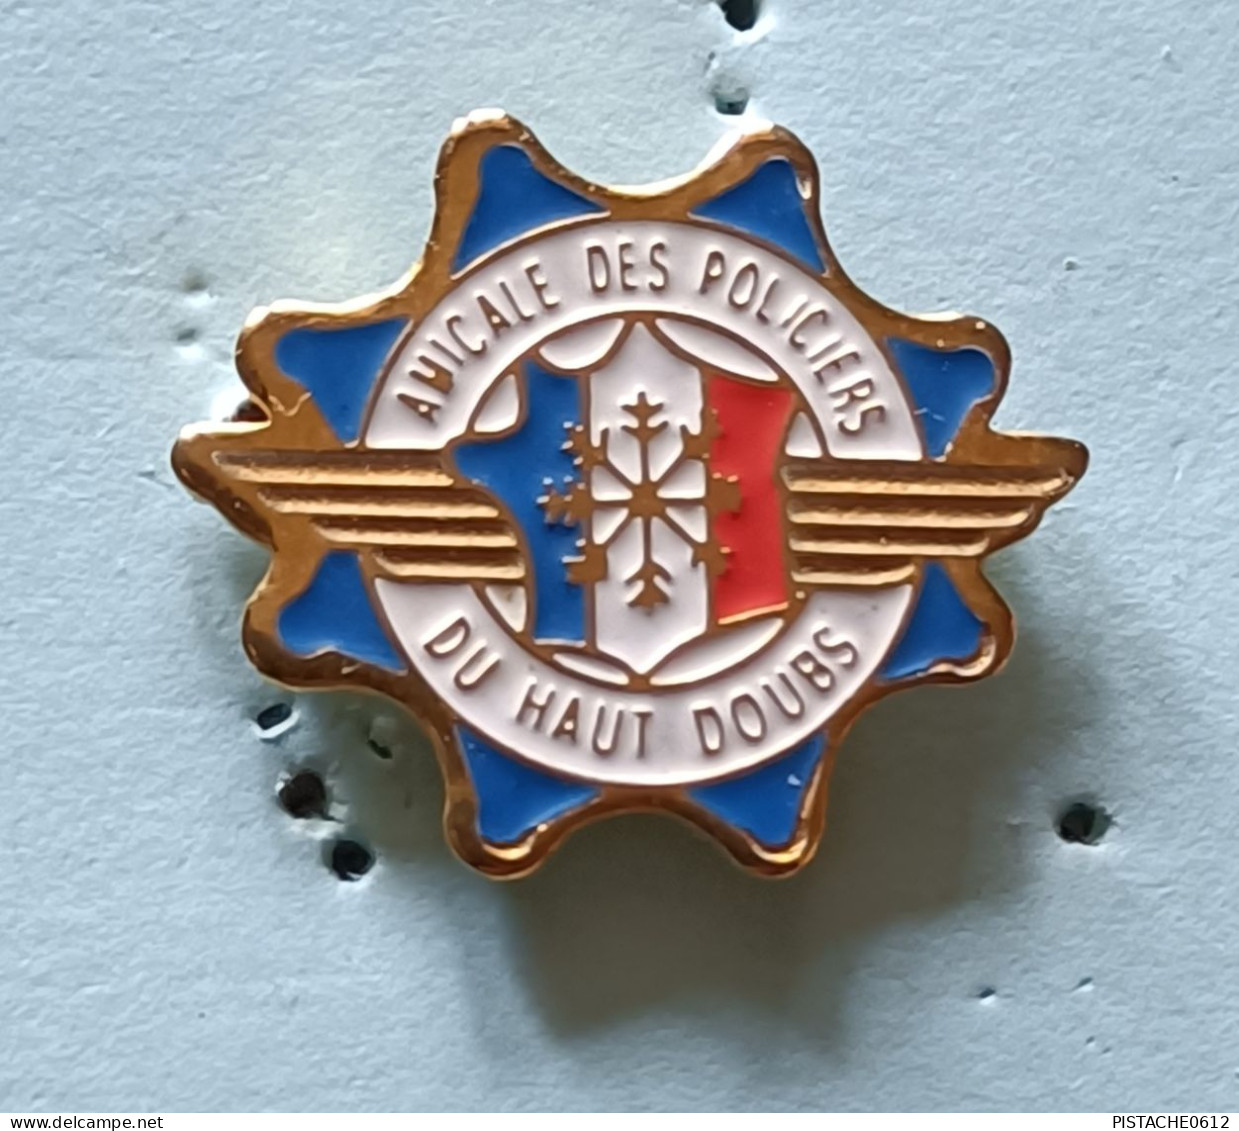 Pin's Amicale Des Policiers Du Haut Doubs Flocon Neige Signé Euralia - Policia